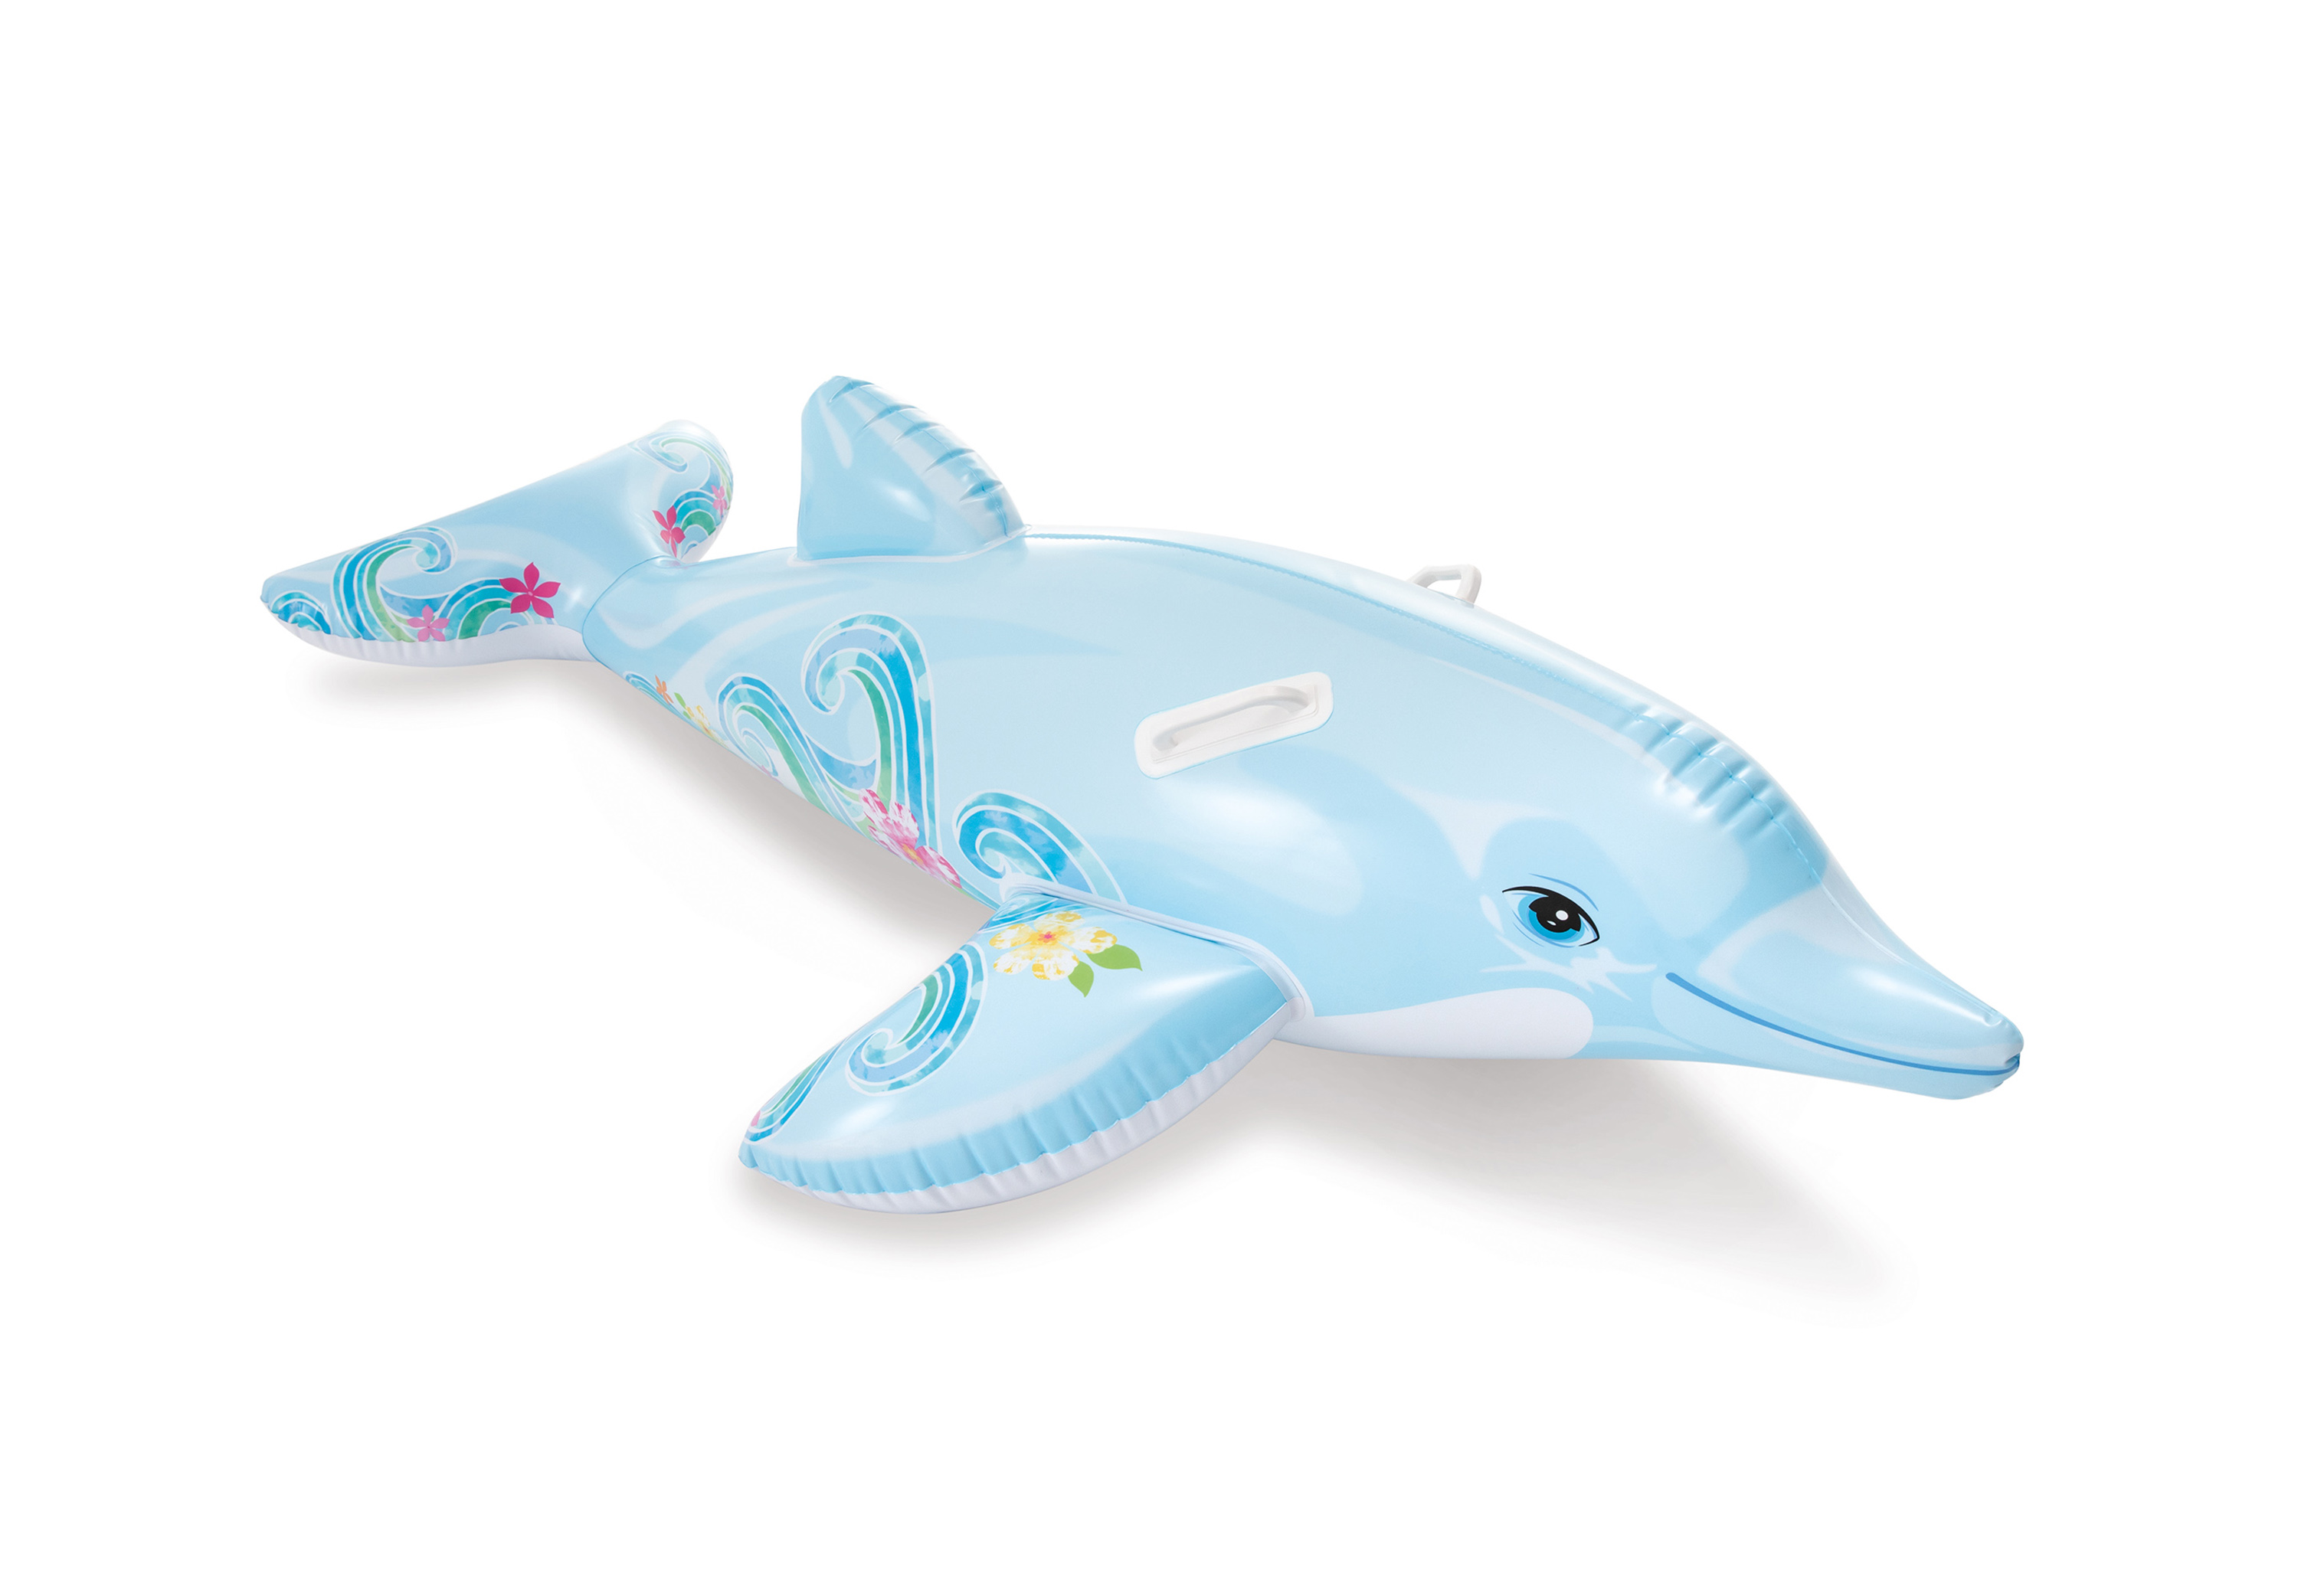 58535NP Nafukovací delfín